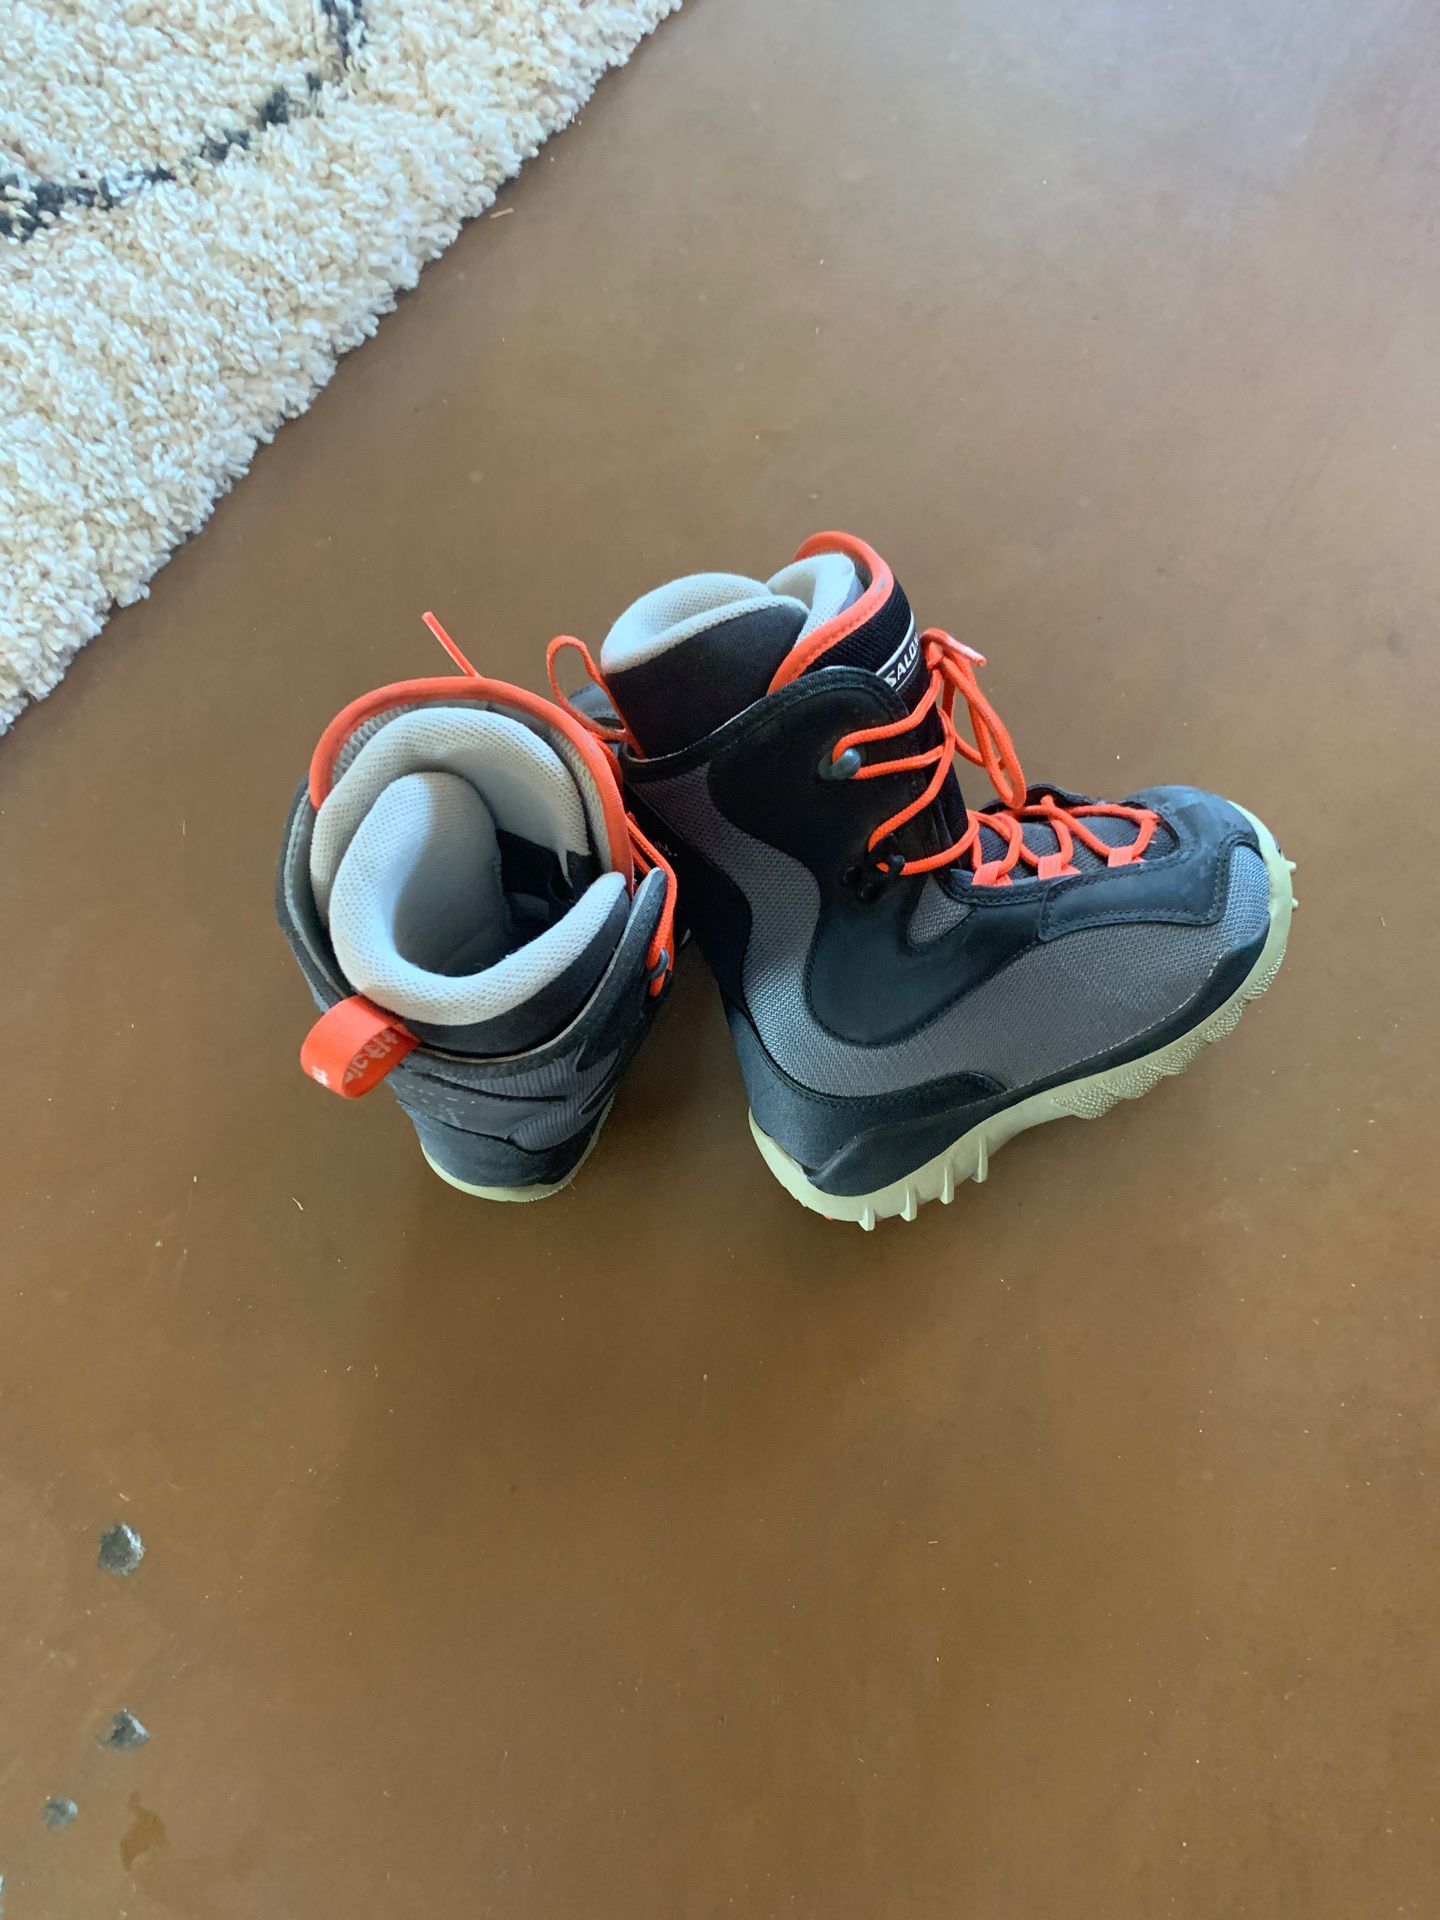 Salomon snow board boots